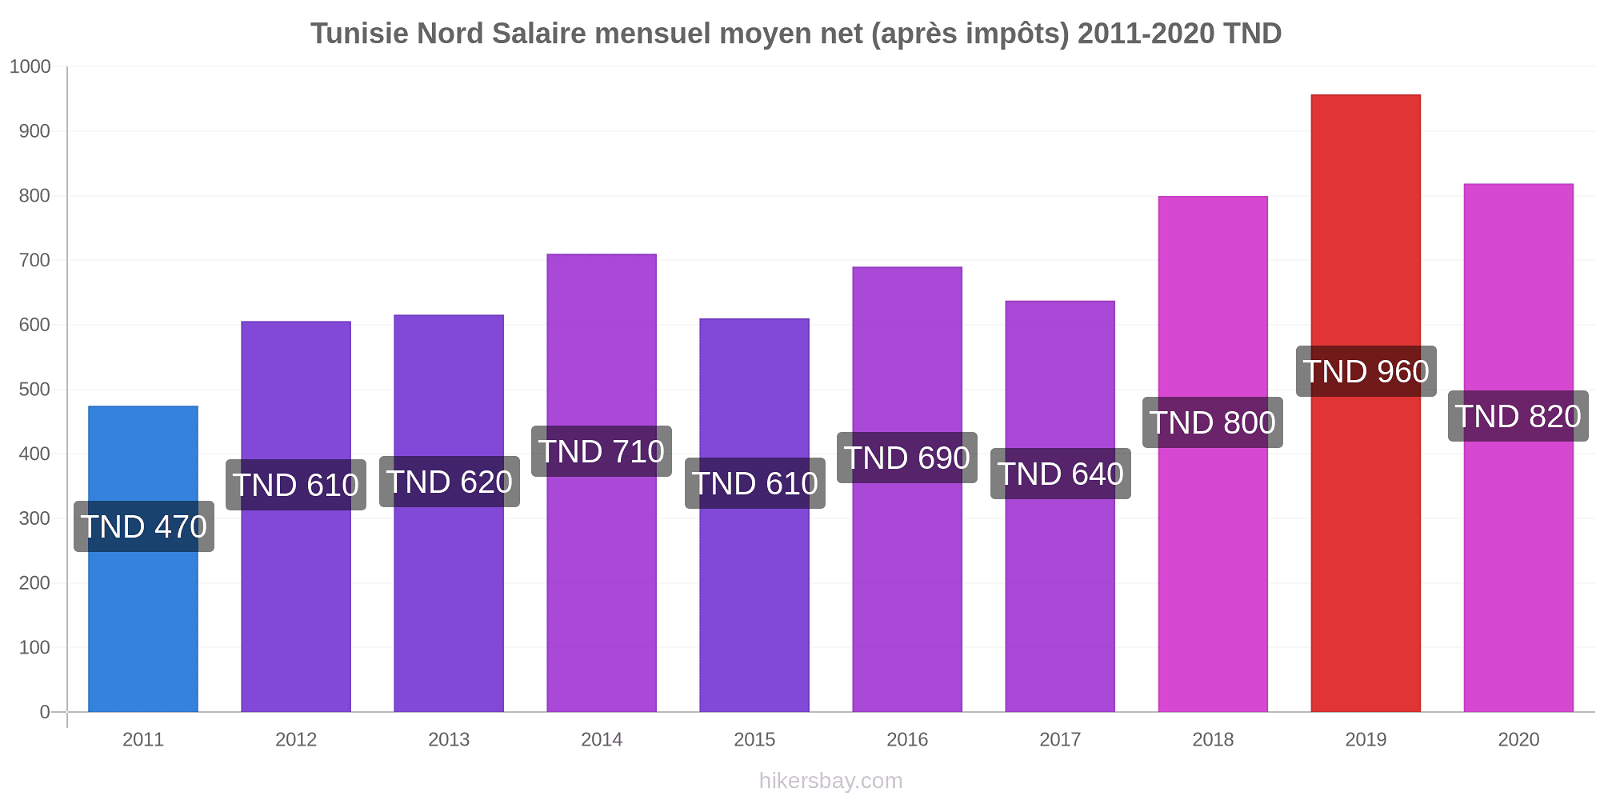 Tunisie Nord changements de prix Salaire mensuel Net (après impôts) hikersbay.com